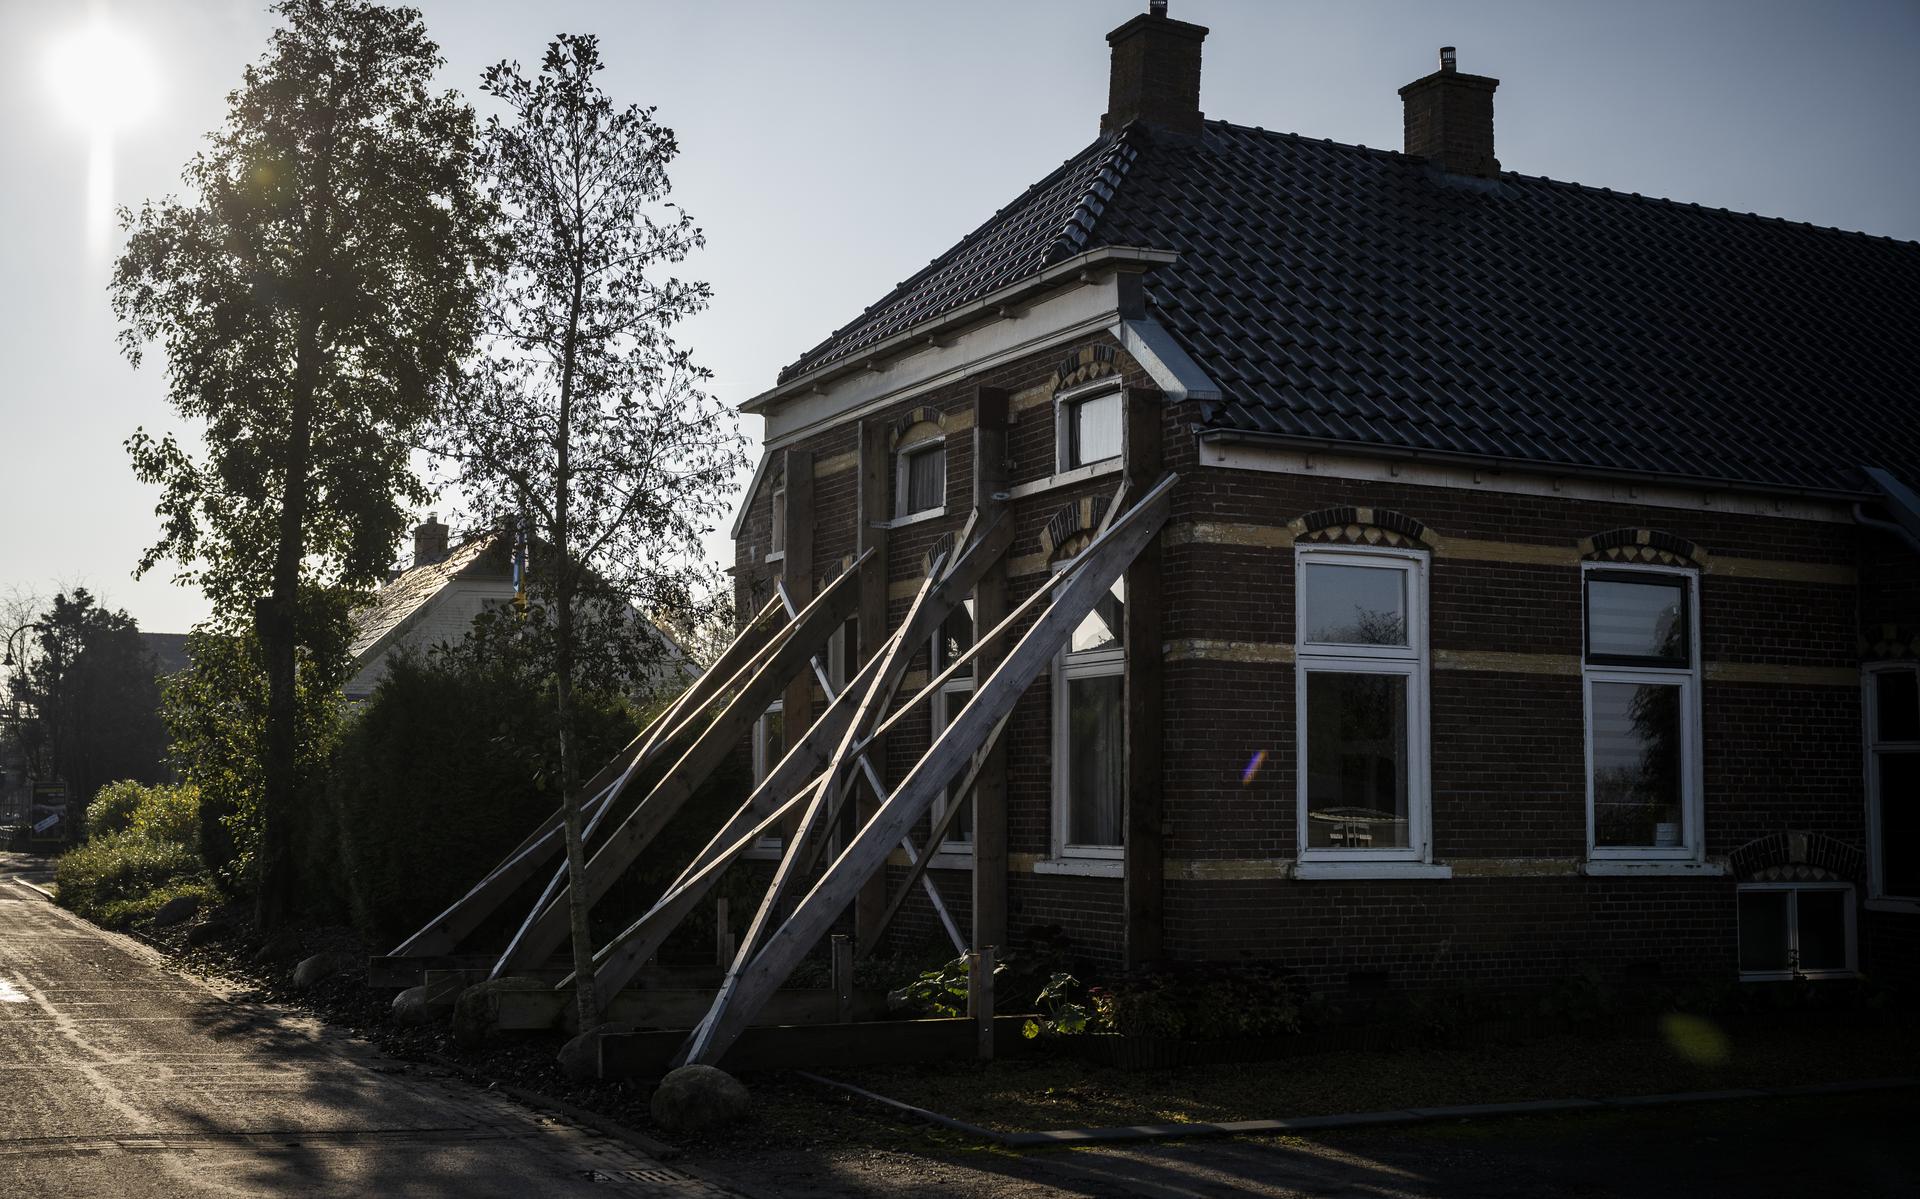 De aardschokproblematiek schaadt ook de gezondheid en het welbevinden van de bewoners, stelt de SodM.

Foto: ANP / Hollandse Hoogte / Kees van de Veen